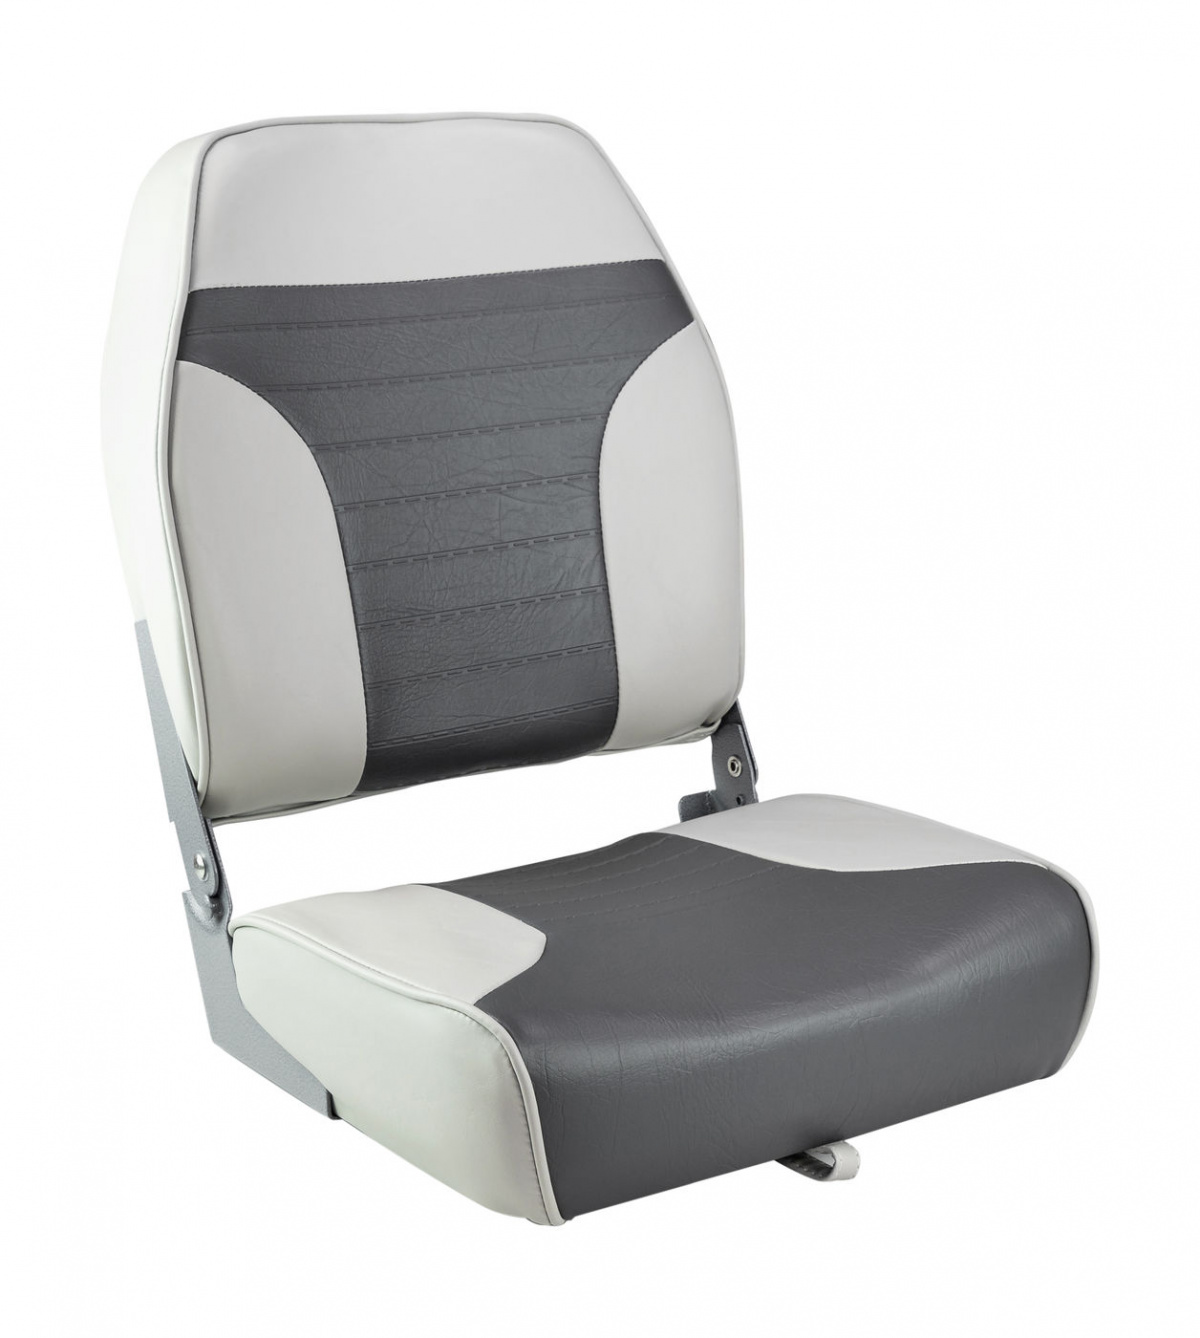 Кресло складное мягкое ECONOMY с высокой спинкой, цвет серый/темно-серый, 889-7748